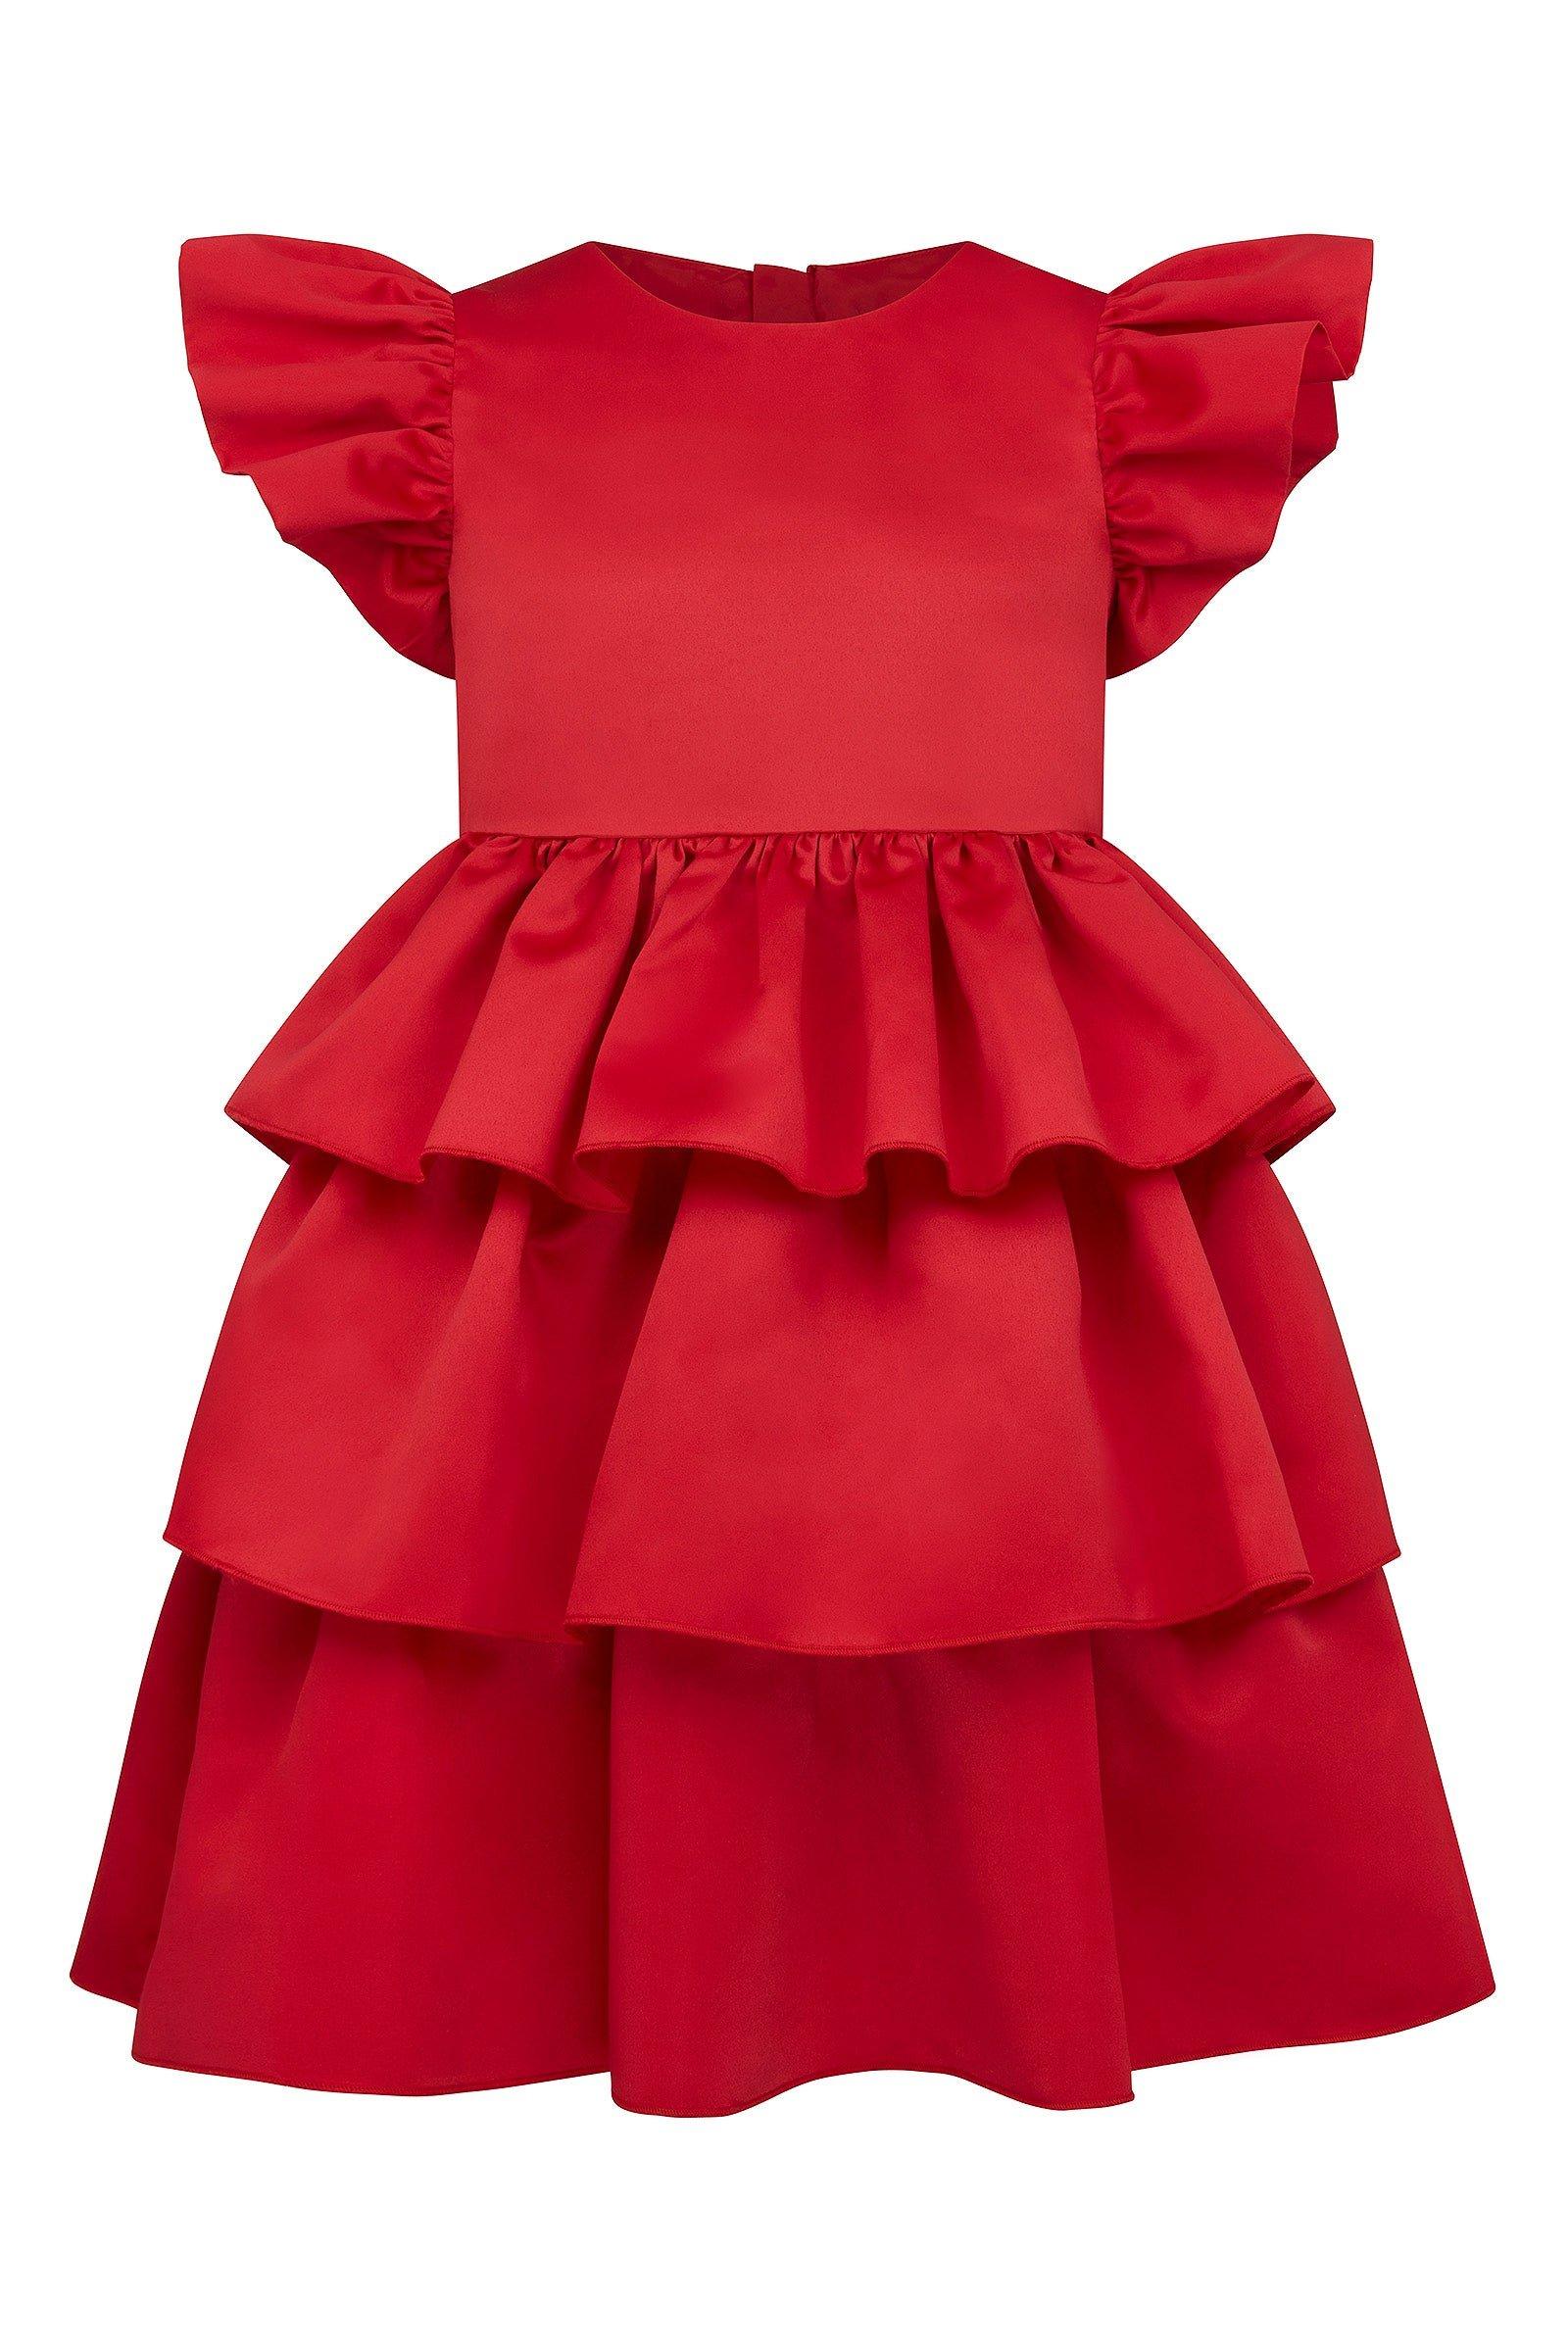 Атласное вечернее платье Scarlett с оборками HOLLY HASTIE, красный роскошное розовое платье с оборками для девочек подростков платье с цветами для малышей модные платья для показа дня рождения свадьбы ве